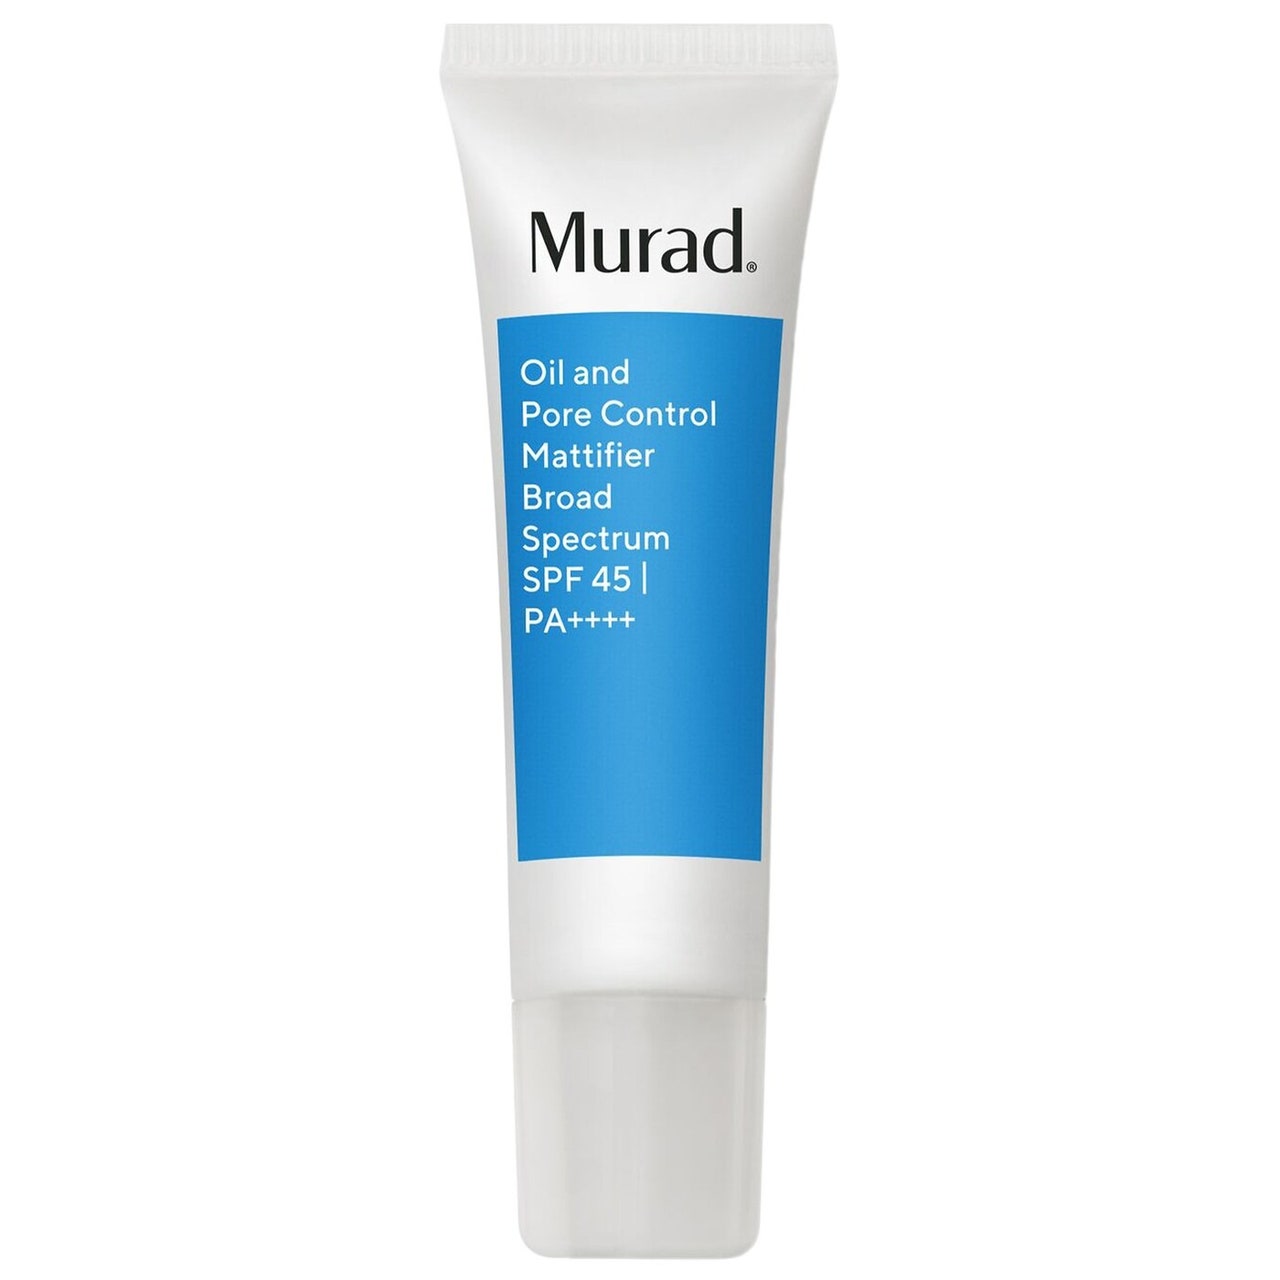 Murad Oil and Pore Control Mattifier Broad Spectrum SPF 45 PA+++++, weiße Tube mit blauem rechteckigem Etikett auf weißem Hintergrund